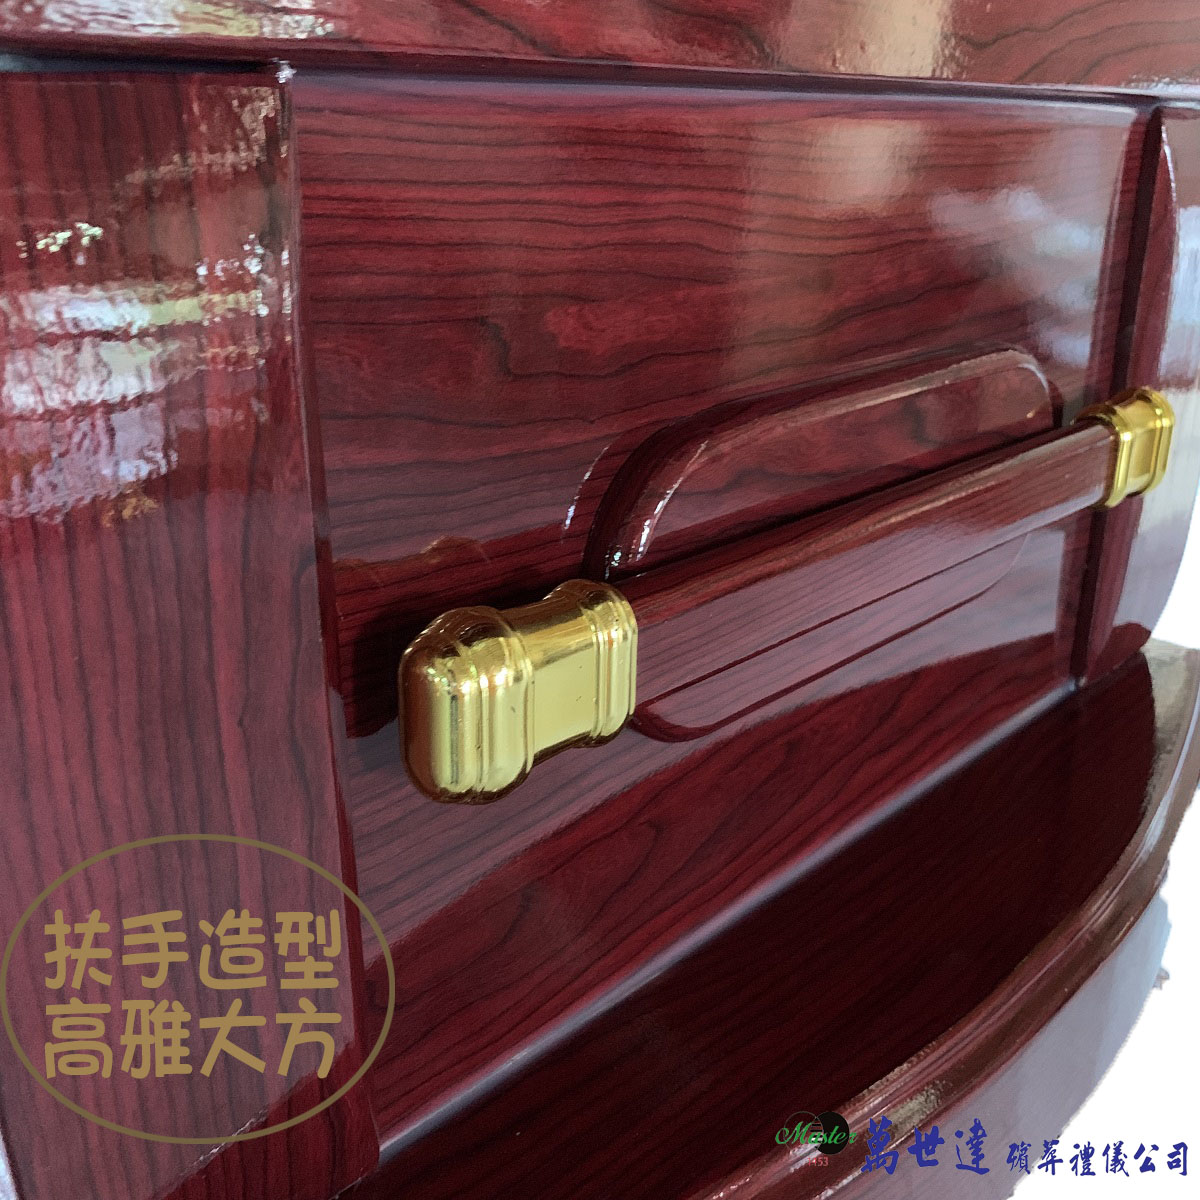 【入殮出】十字架基督天主火化平蓋紅木扶手棺2.1尺